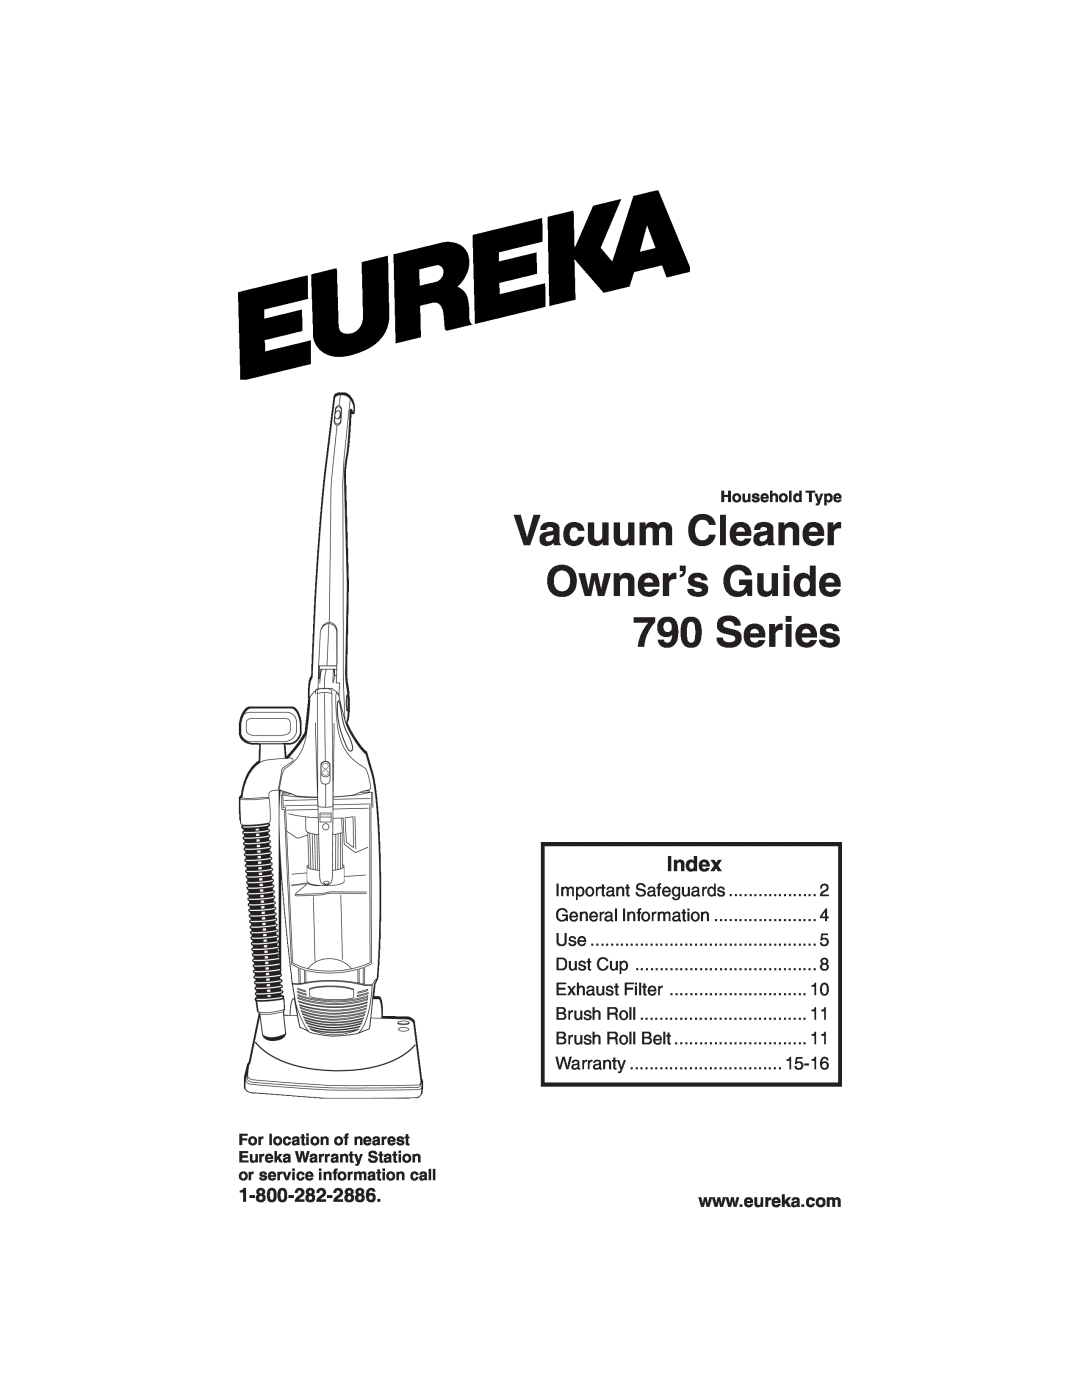 Eureka warranty Vacuum Cleaner Owner’s Guide 790 Series, Index 